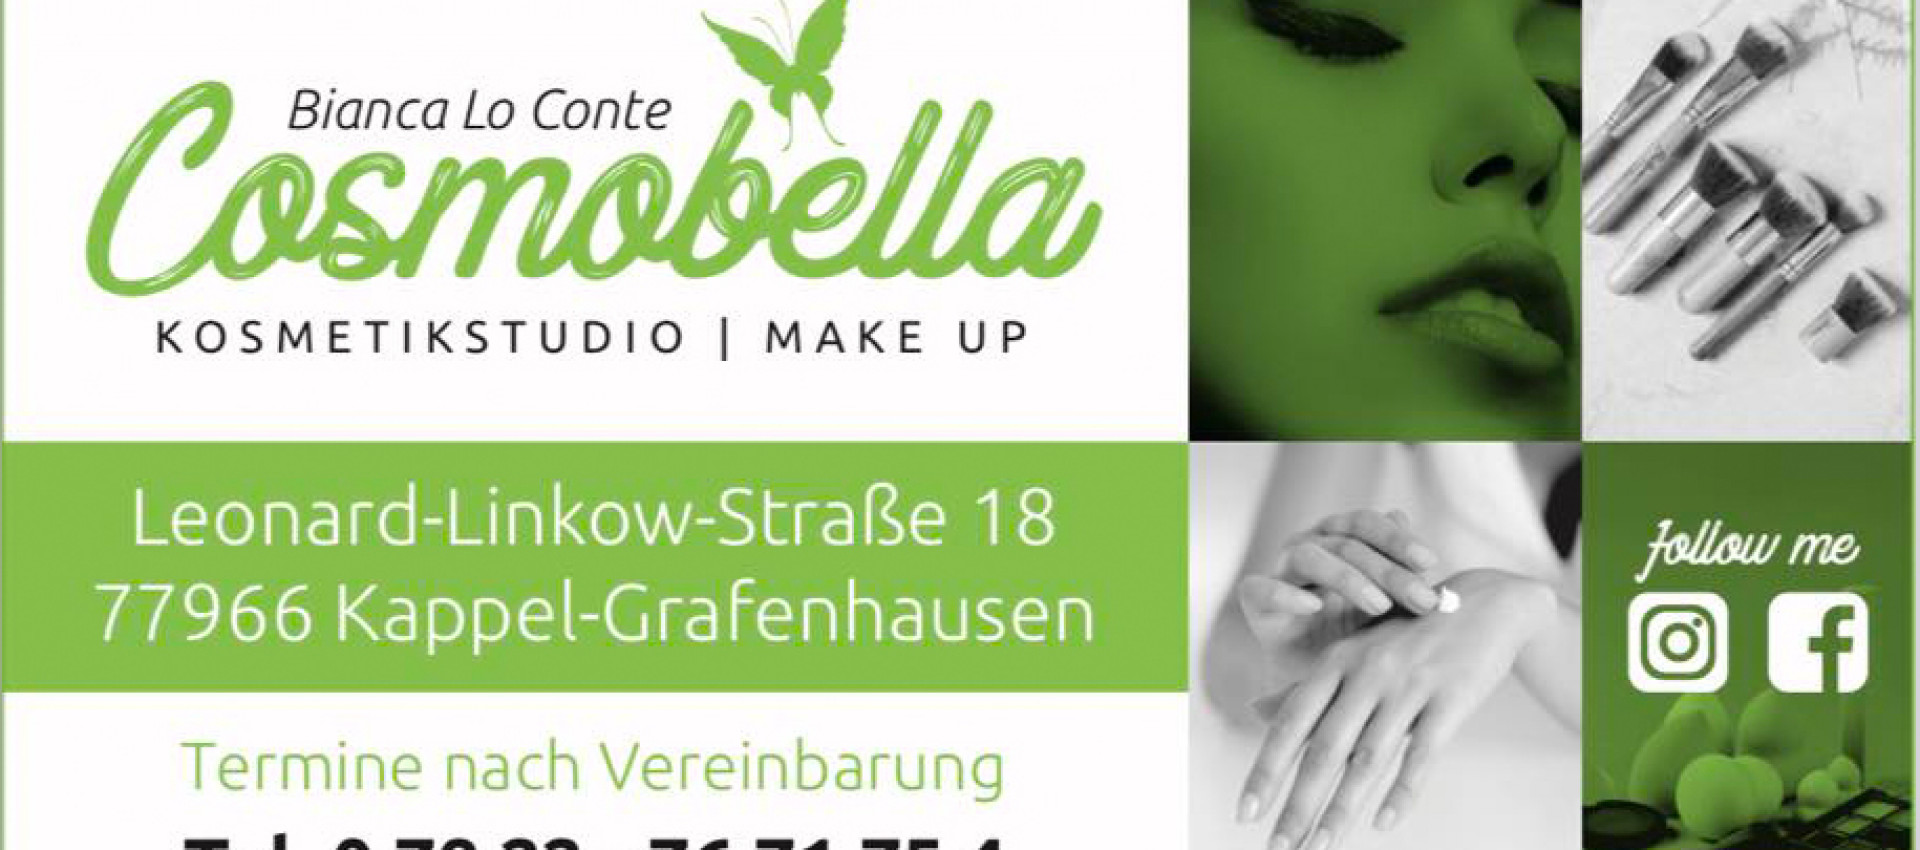 Unser neues Mitglied feiert Neueröffnung - Cosmobella Kosmetikstudio - Bianca Lo Conte